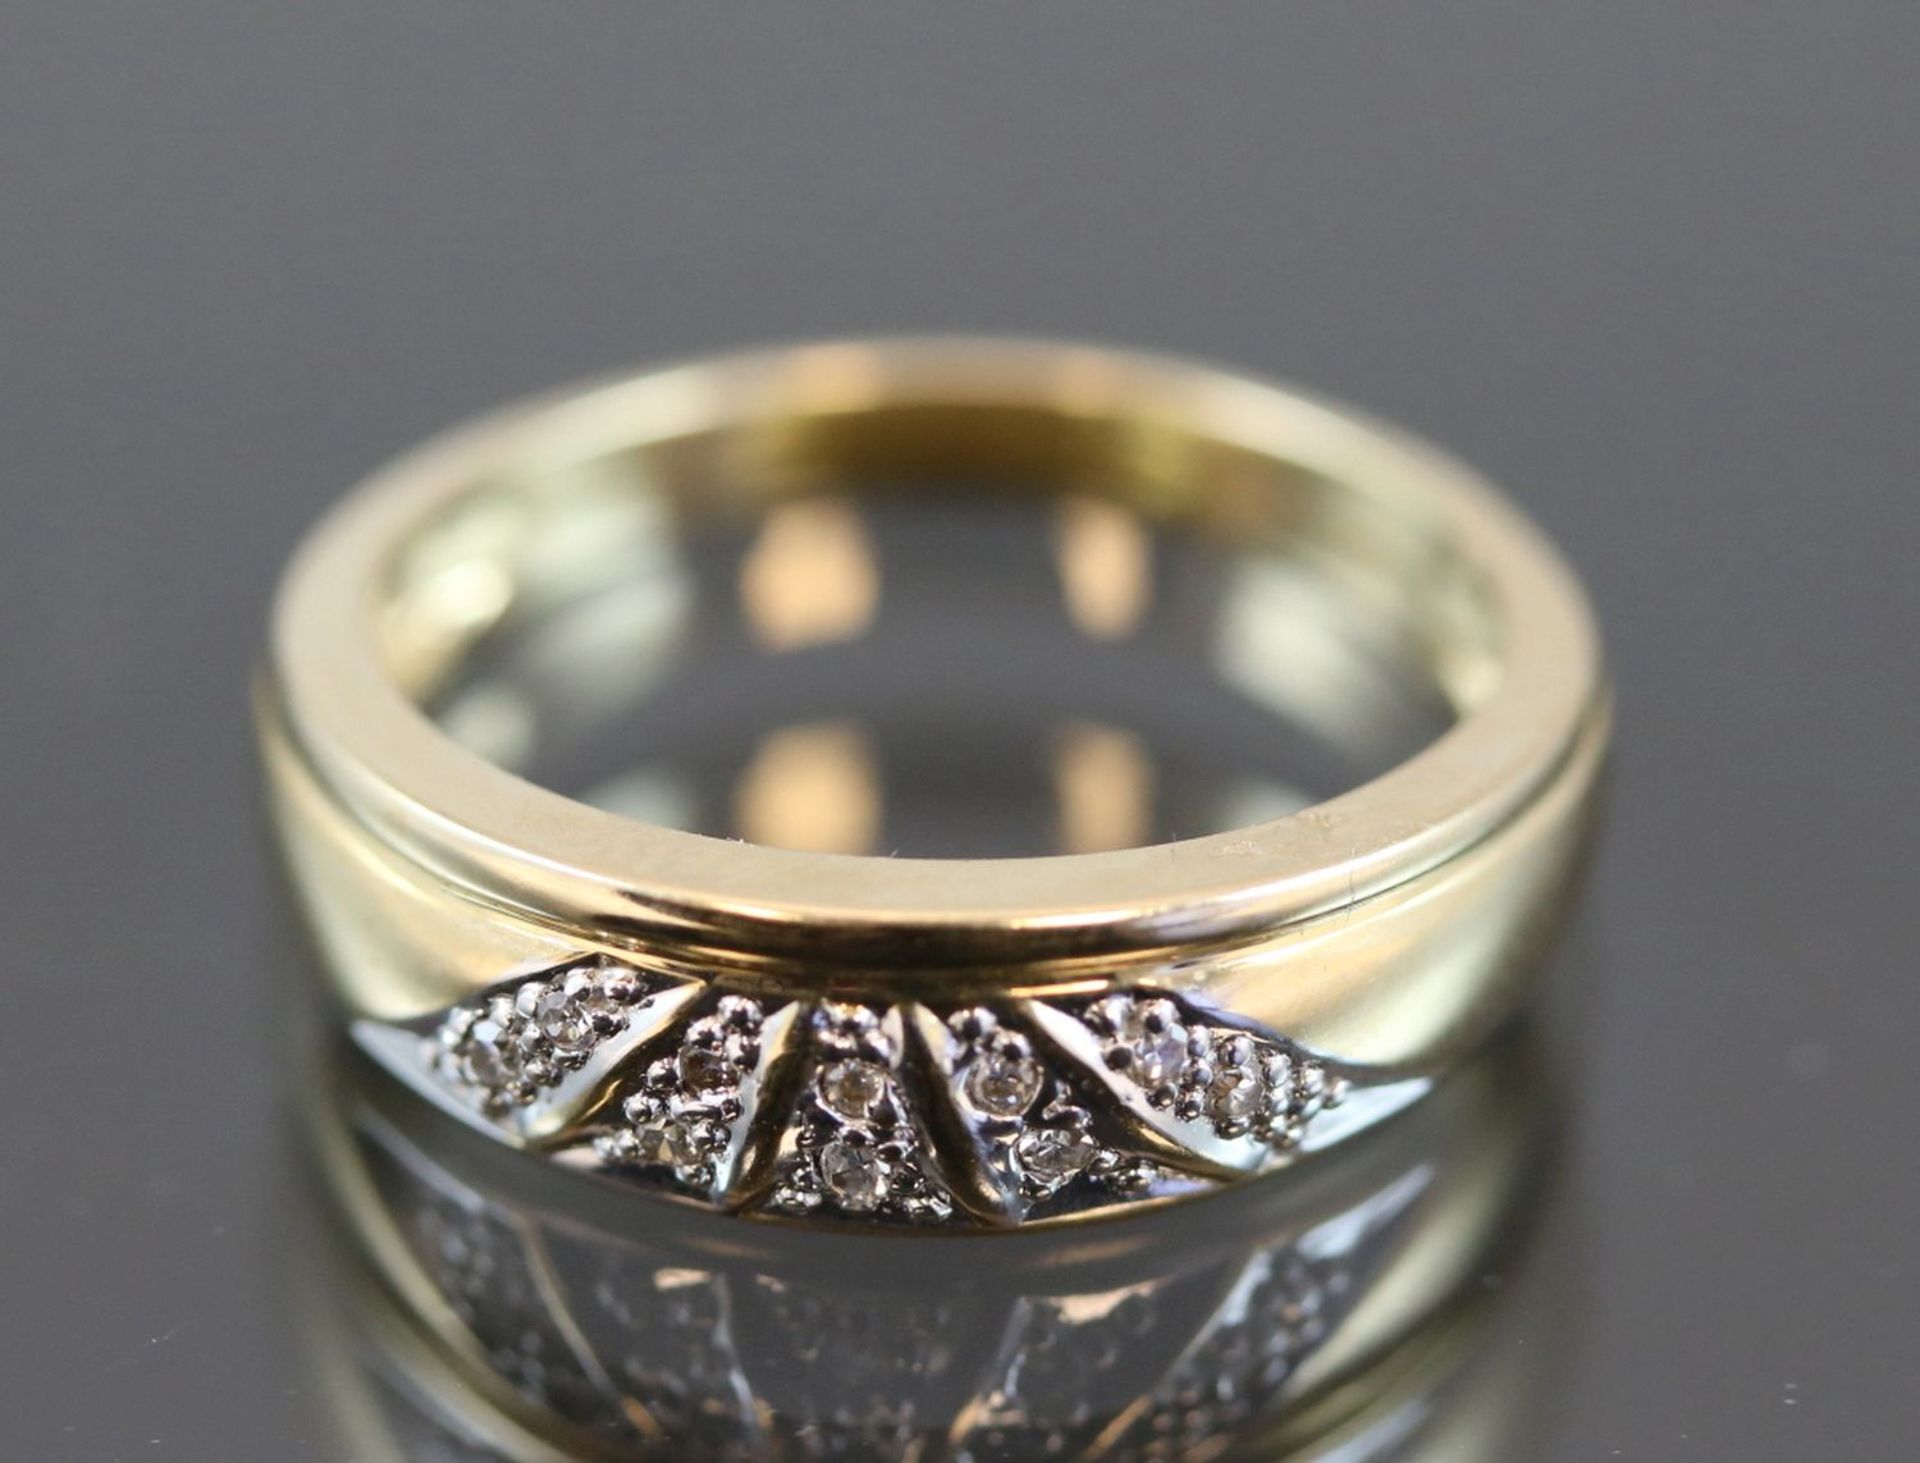 Diamant-Ring, 585 Gelbgold3,5 Gramm 10 Diamanten, 0,10 ct., w/si. Ringgröße: 54Schätzpreis: 400,-